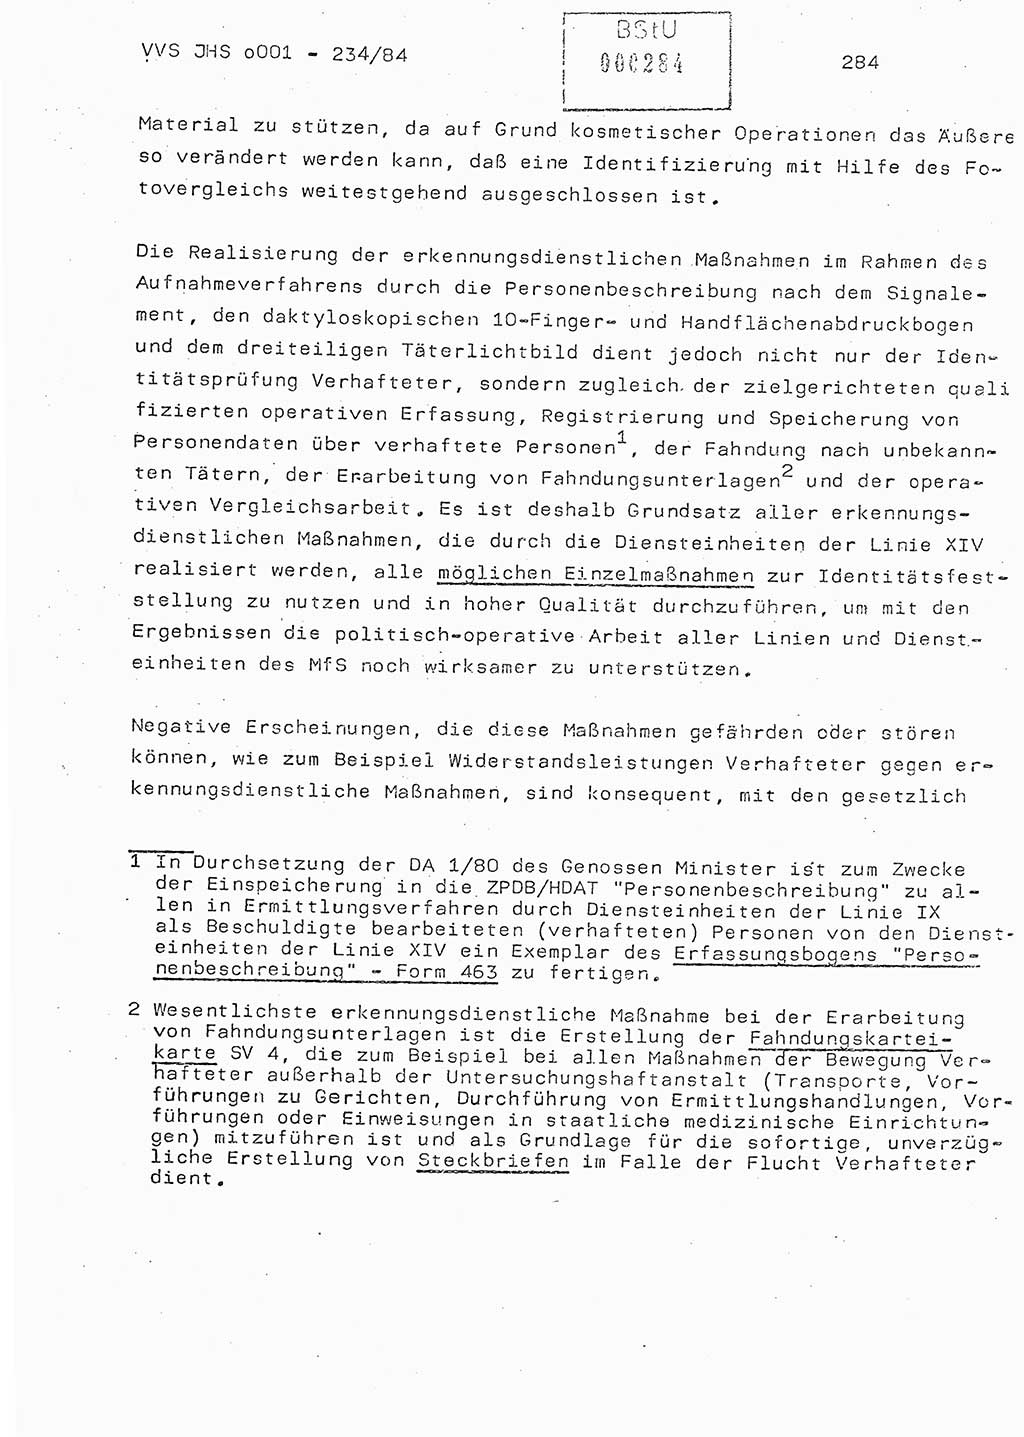 Dissertation Oberst Siegfried Rataizick (Abt. ⅩⅣ), Oberstleutnant Volkmar Heinz (Abt. ⅩⅣ), Oberstleutnant Werner Stein (HA Ⅸ), Hauptmann Heinz Conrad (JHS), Ministerium für Staatssicherheit (MfS) [Deutsche Demokratische Republik (DDR)], Juristische Hochschule (JHS), Vertrauliche Verschlußsache (VVS) o001-234/84, Potsdam 1984, Seite 284 (Diss. MfS DDR JHS VVS o001-234/84 1984, S. 284)